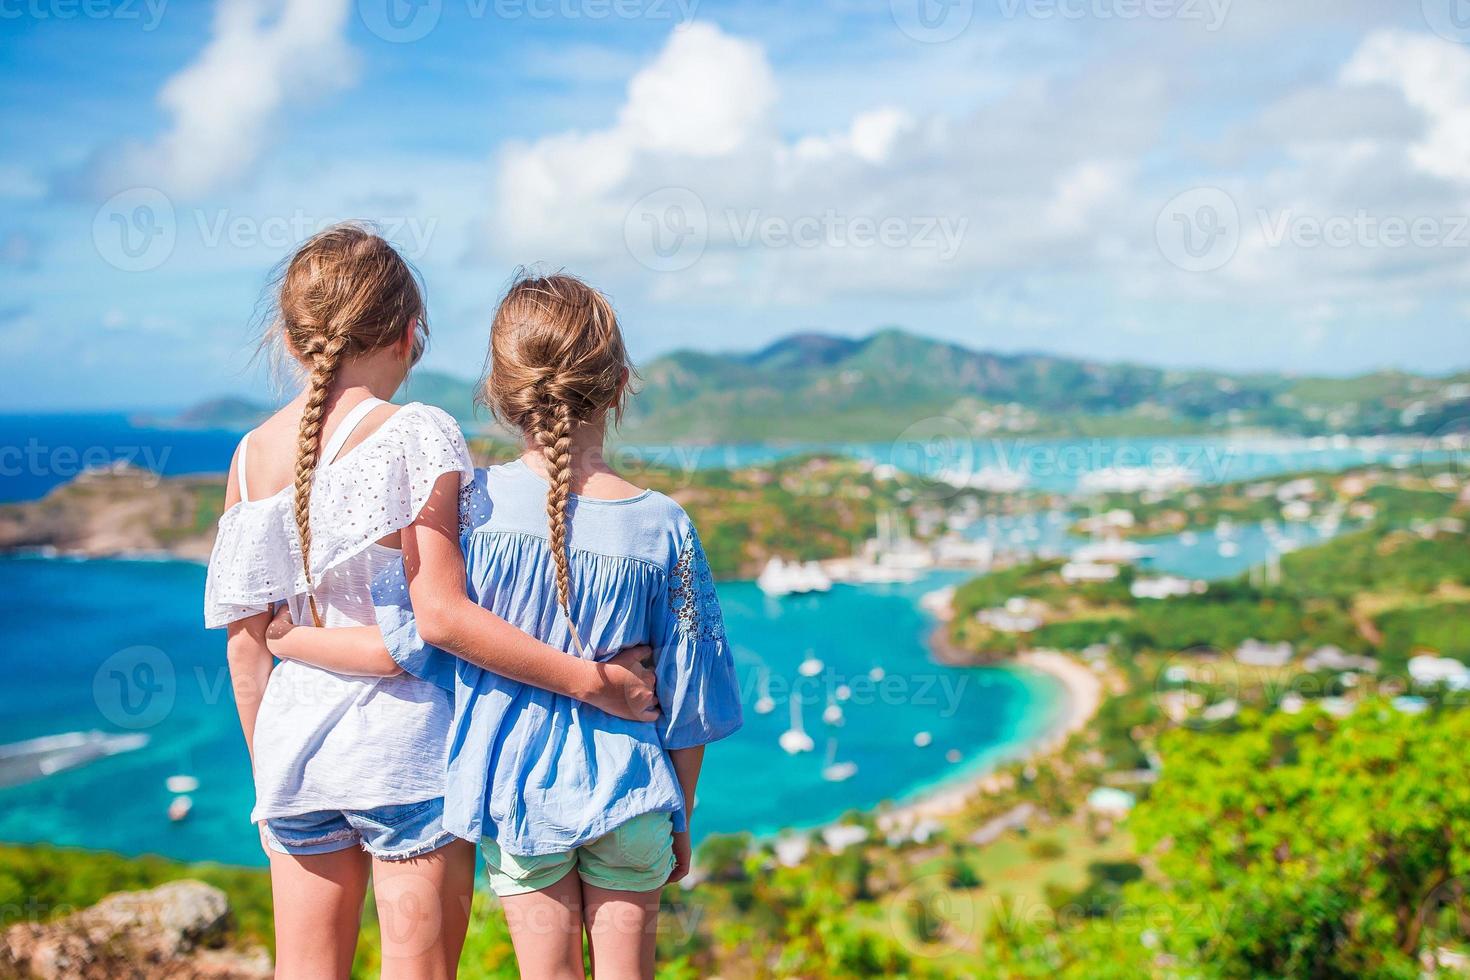 crianças com bela vista famosa. vista do porto inglês de shirley heights, antígua, paradise bay na ilha tropical no mar do caribe foto